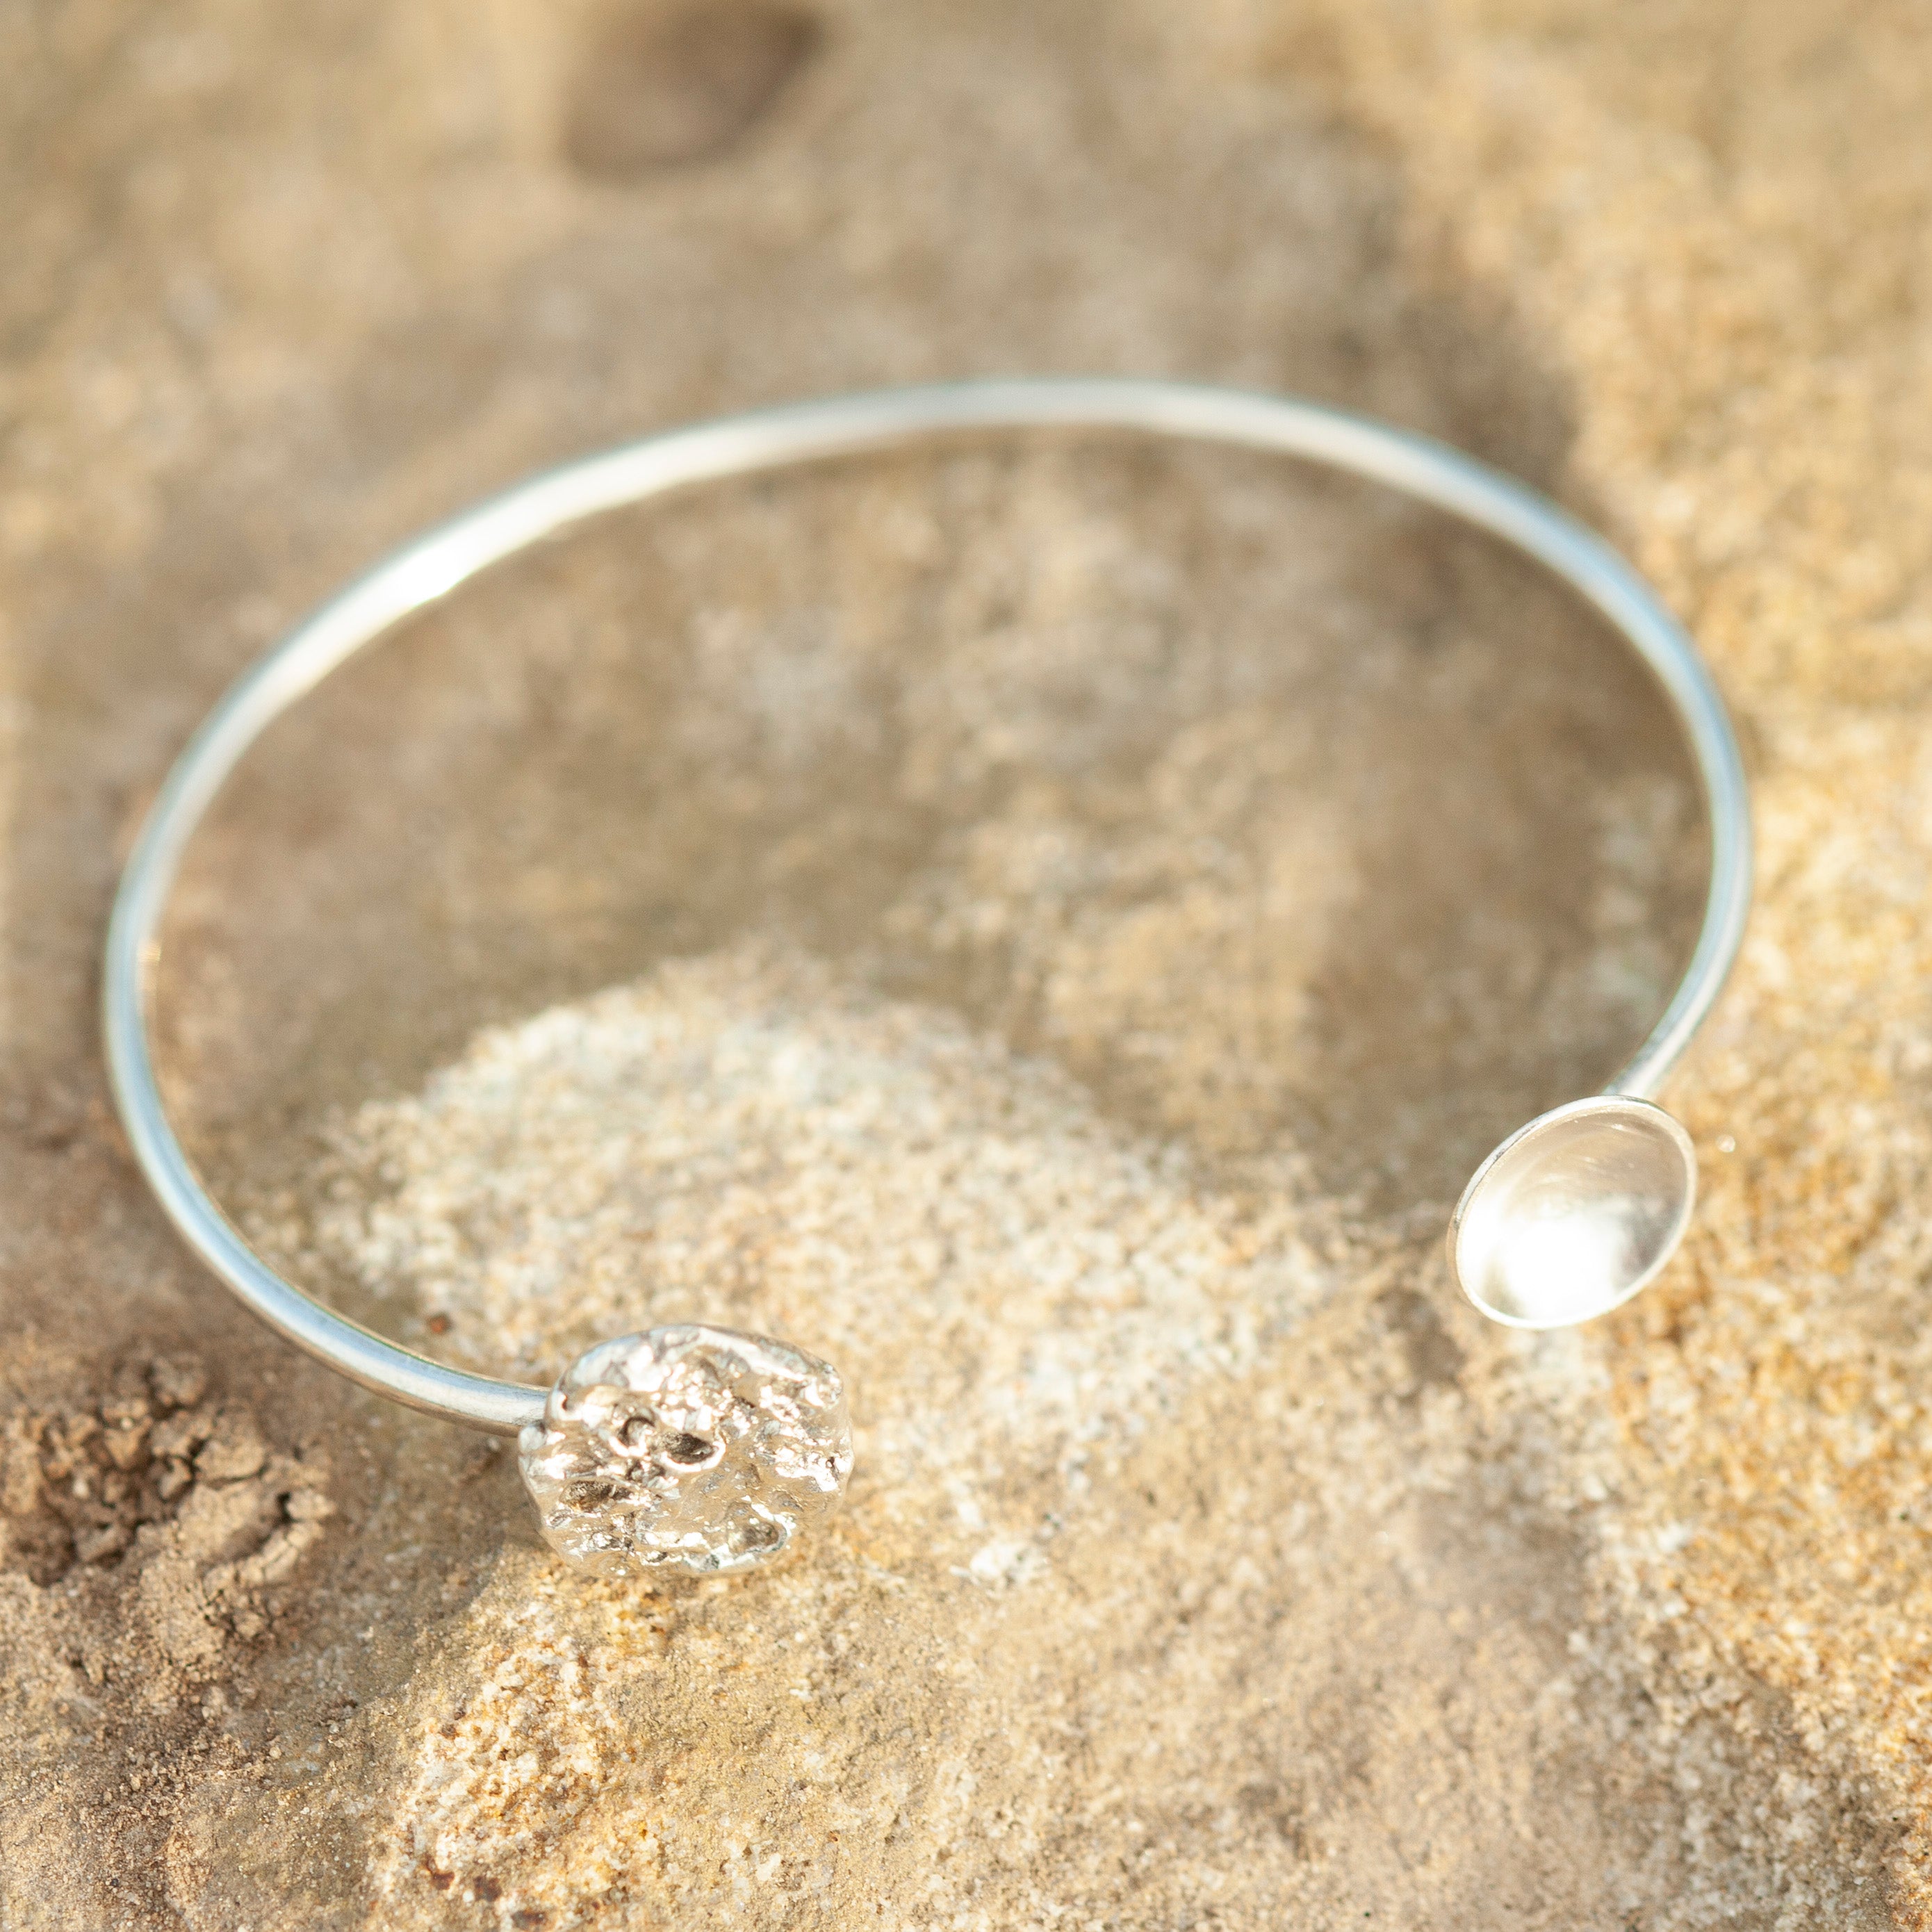 OOAK Edge elegance bracelet in silver #3 •  5cm (ready-to-ship)